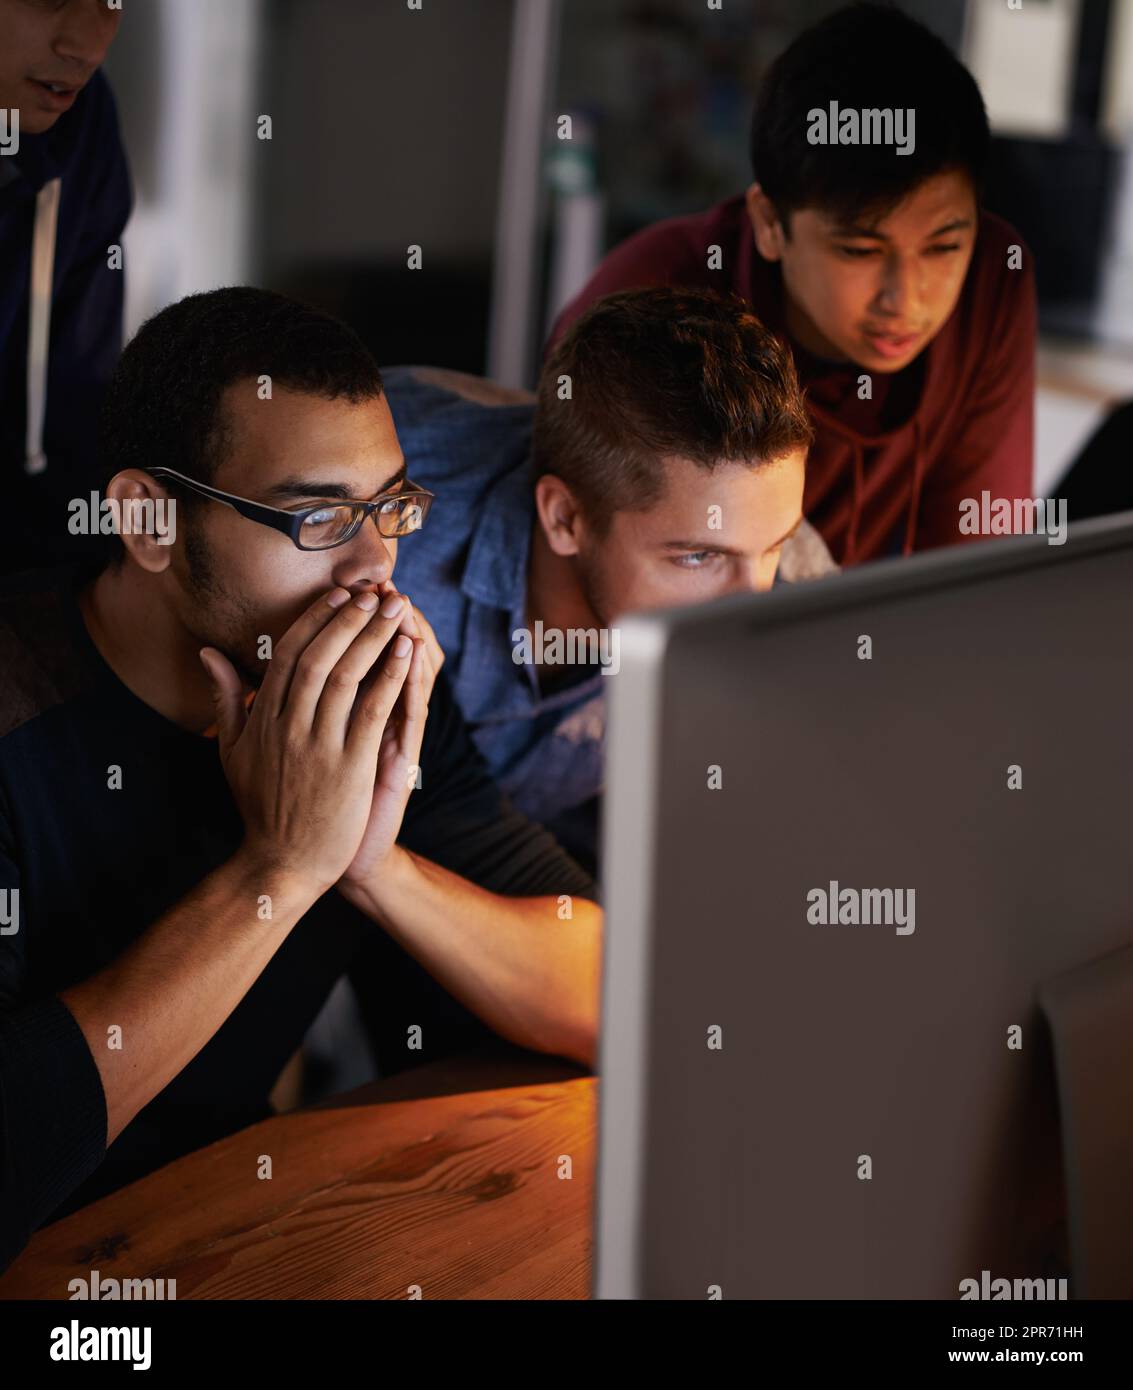 Das ist verrückt. Aufnahme einer Gruppe junger Designer, die gespannt auf einen Monitor starren. Stockfoto